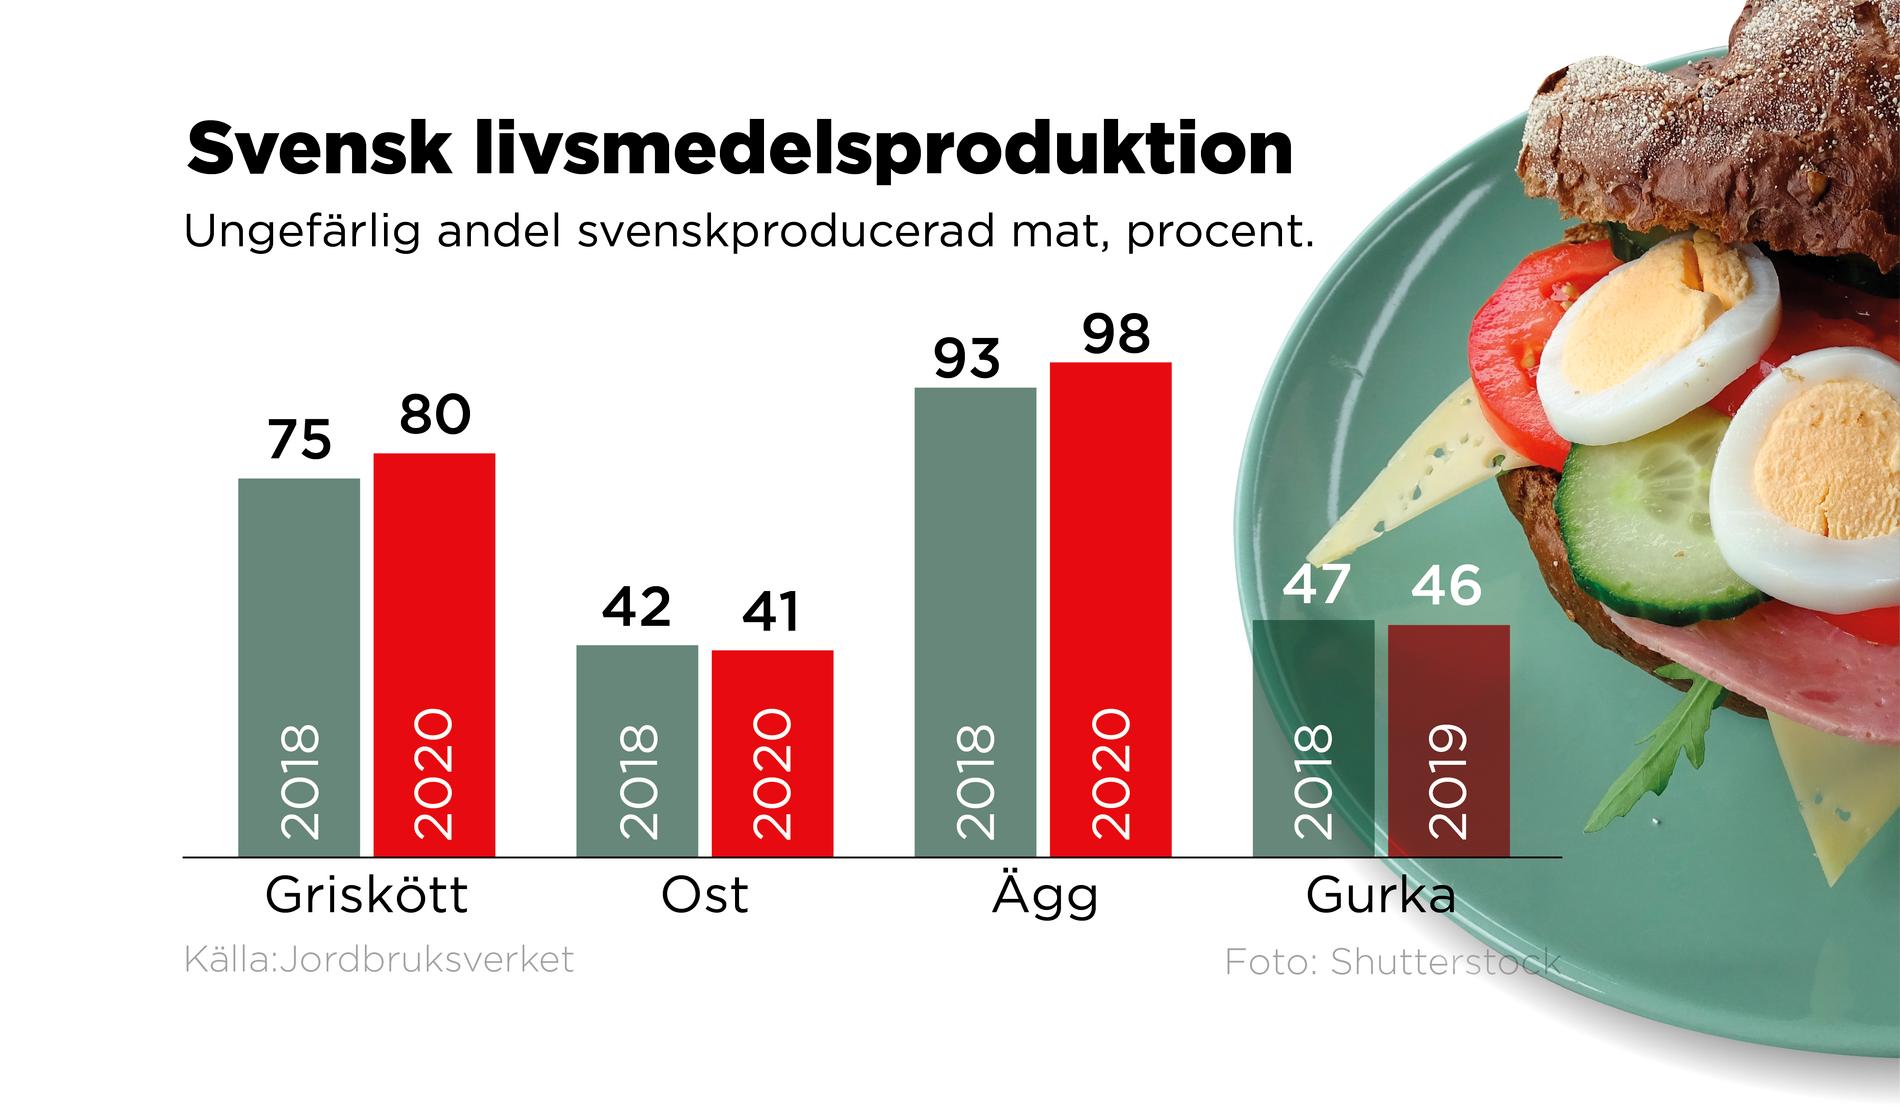 Ungefärlig andel svenskproducerad mat, i procent, mätt i marknadsandel av mat som säljs i Sverige.